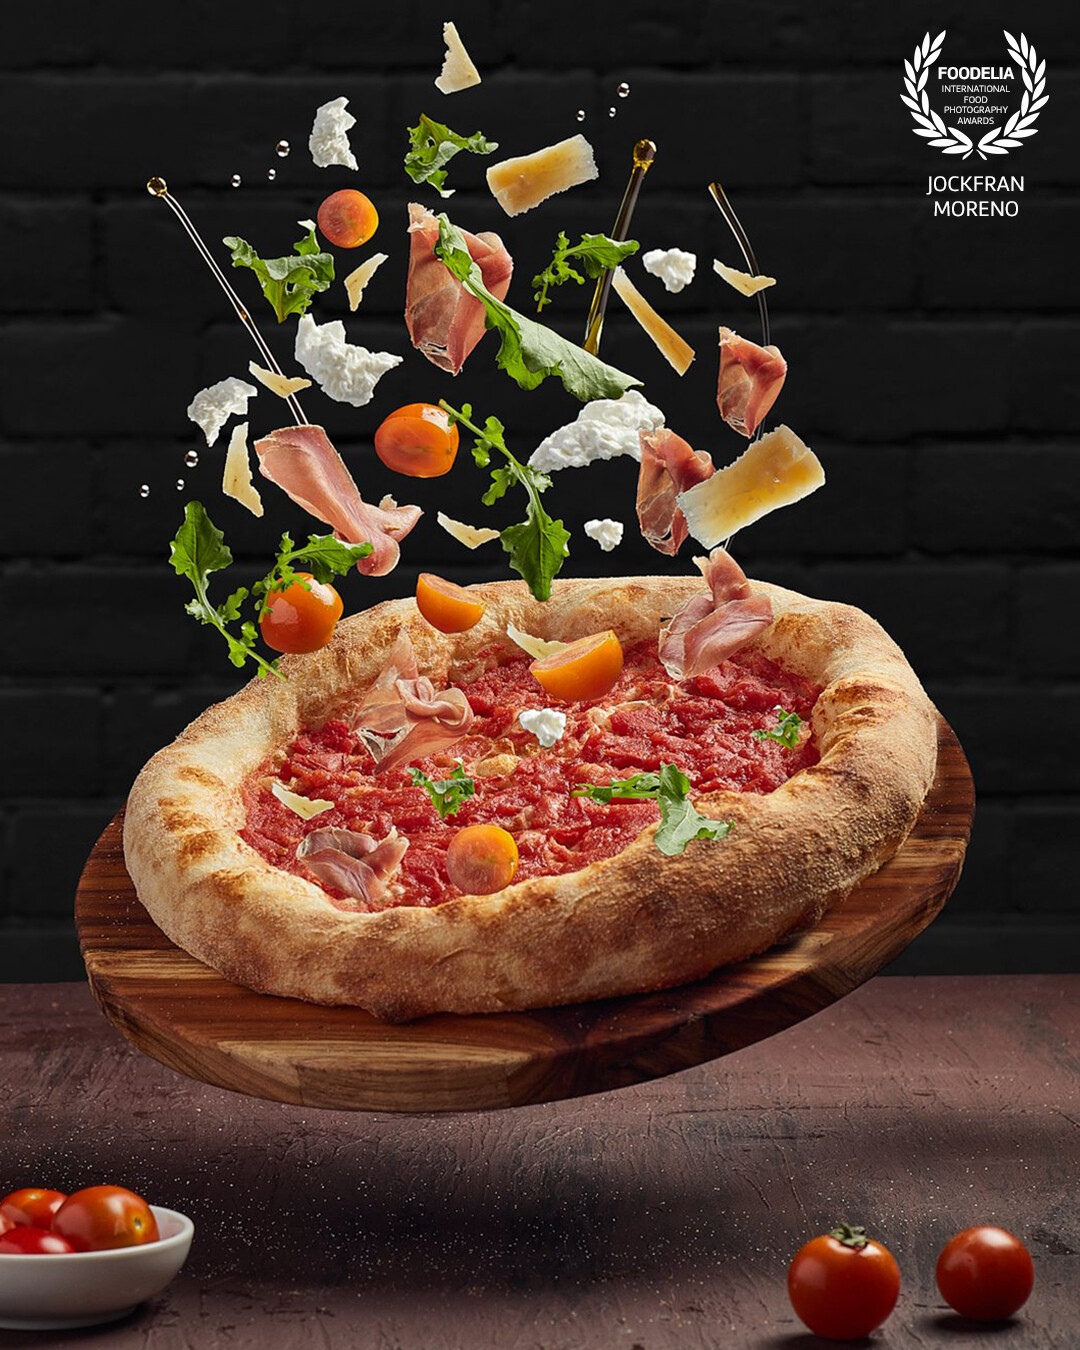 Fotografia Flyng Food realizada para el Restaurante @DueBimbe en la ciudad de Bogotá Colombia, la pizza es de los platos más conocidos y sabrosos del mundo, quizimos mostrar todos los ingredientes y detalles con lo que es preparada una pizza.